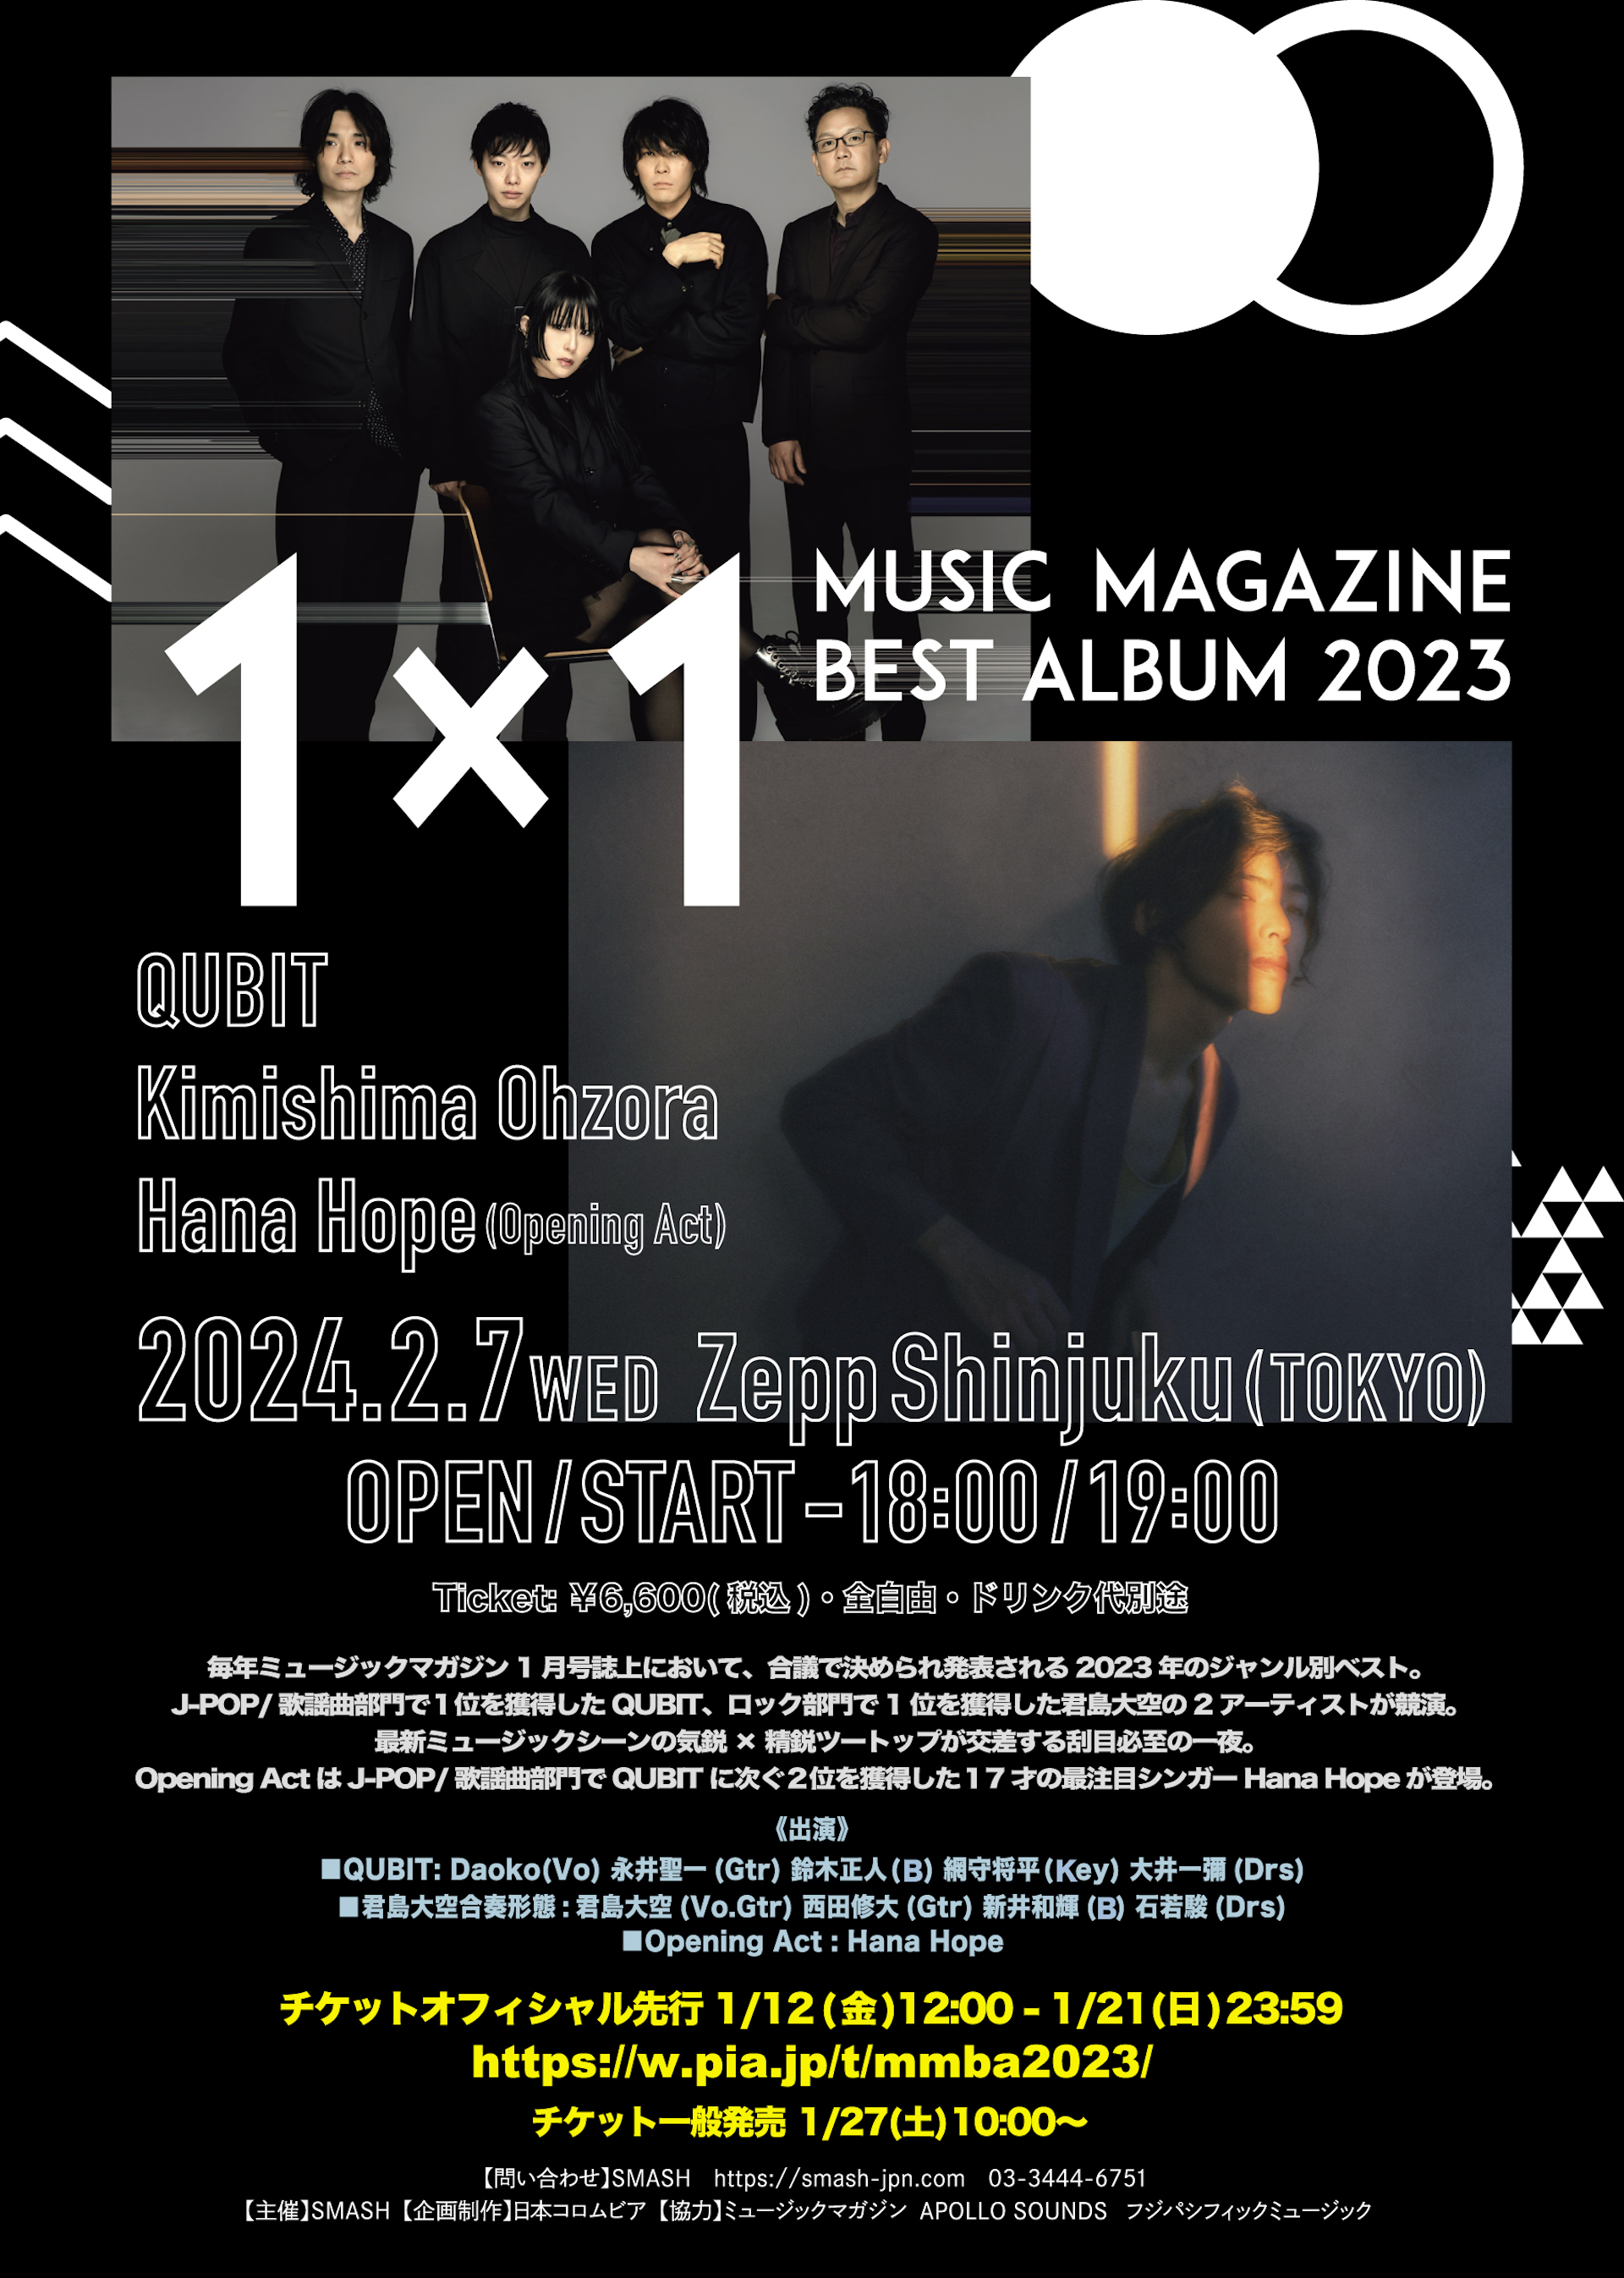 君島大空とQUBITによる2マンライブがZepp Shinjukuで開催｜ミュージック・マガジンの年間ベストアルバムで一位を獲得した2組が登場 music240112-ohzora-kimishima-qubit1